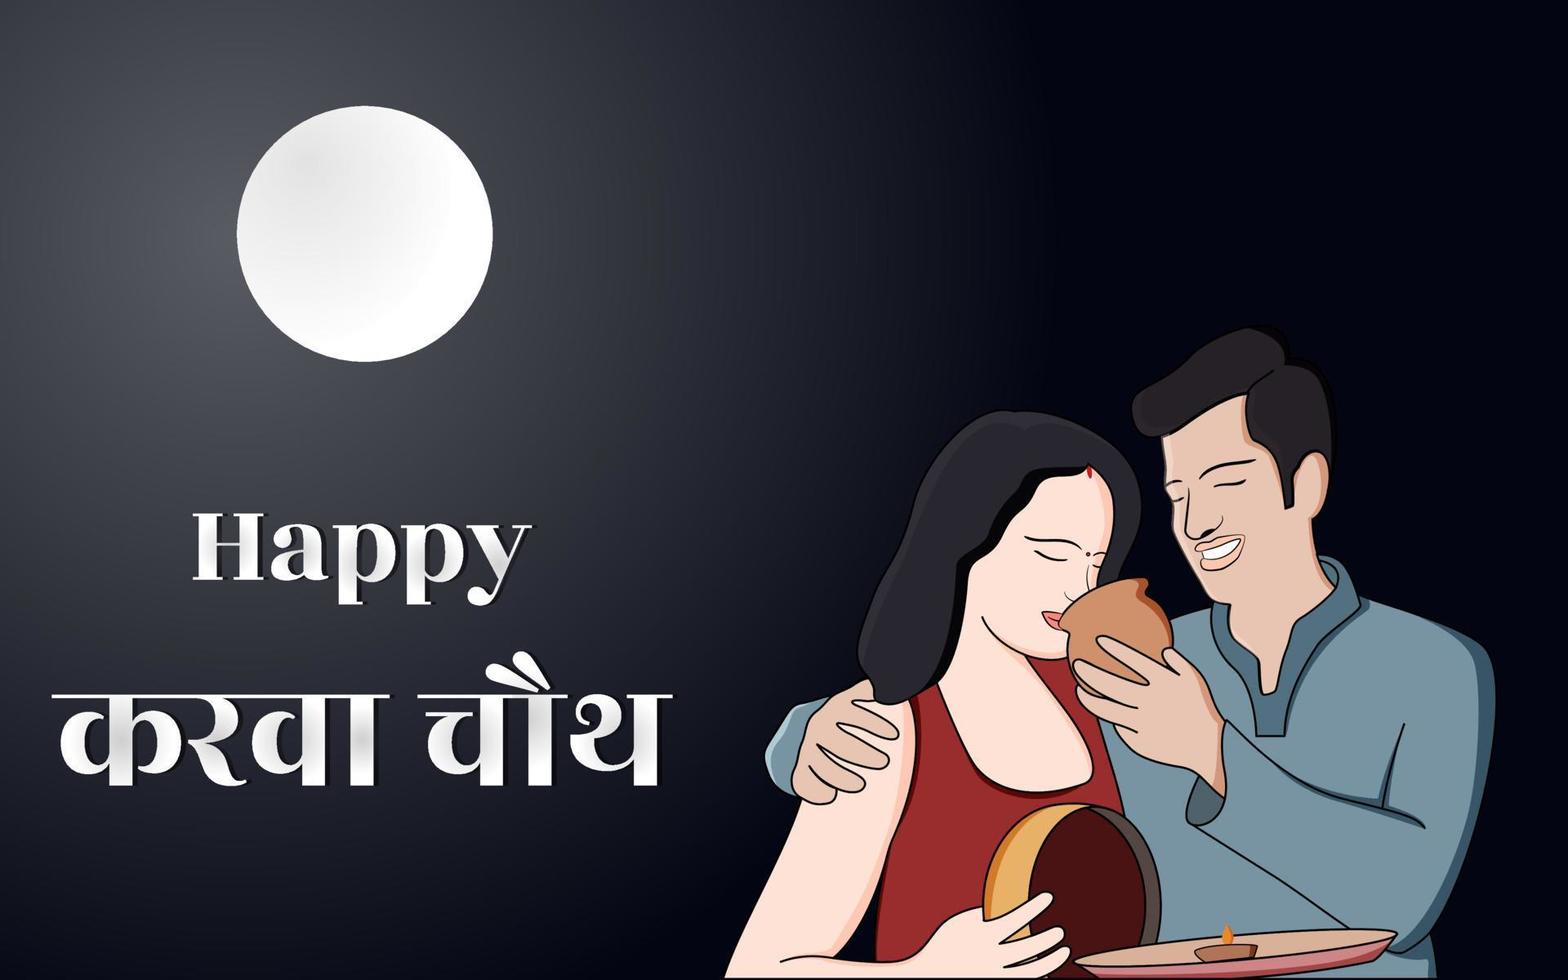 gelukkige karwa chauth vectorillustratie, een paar karwa chauth vieren onder het maanlicht, karwa chauth viering vectorillustratie. vector